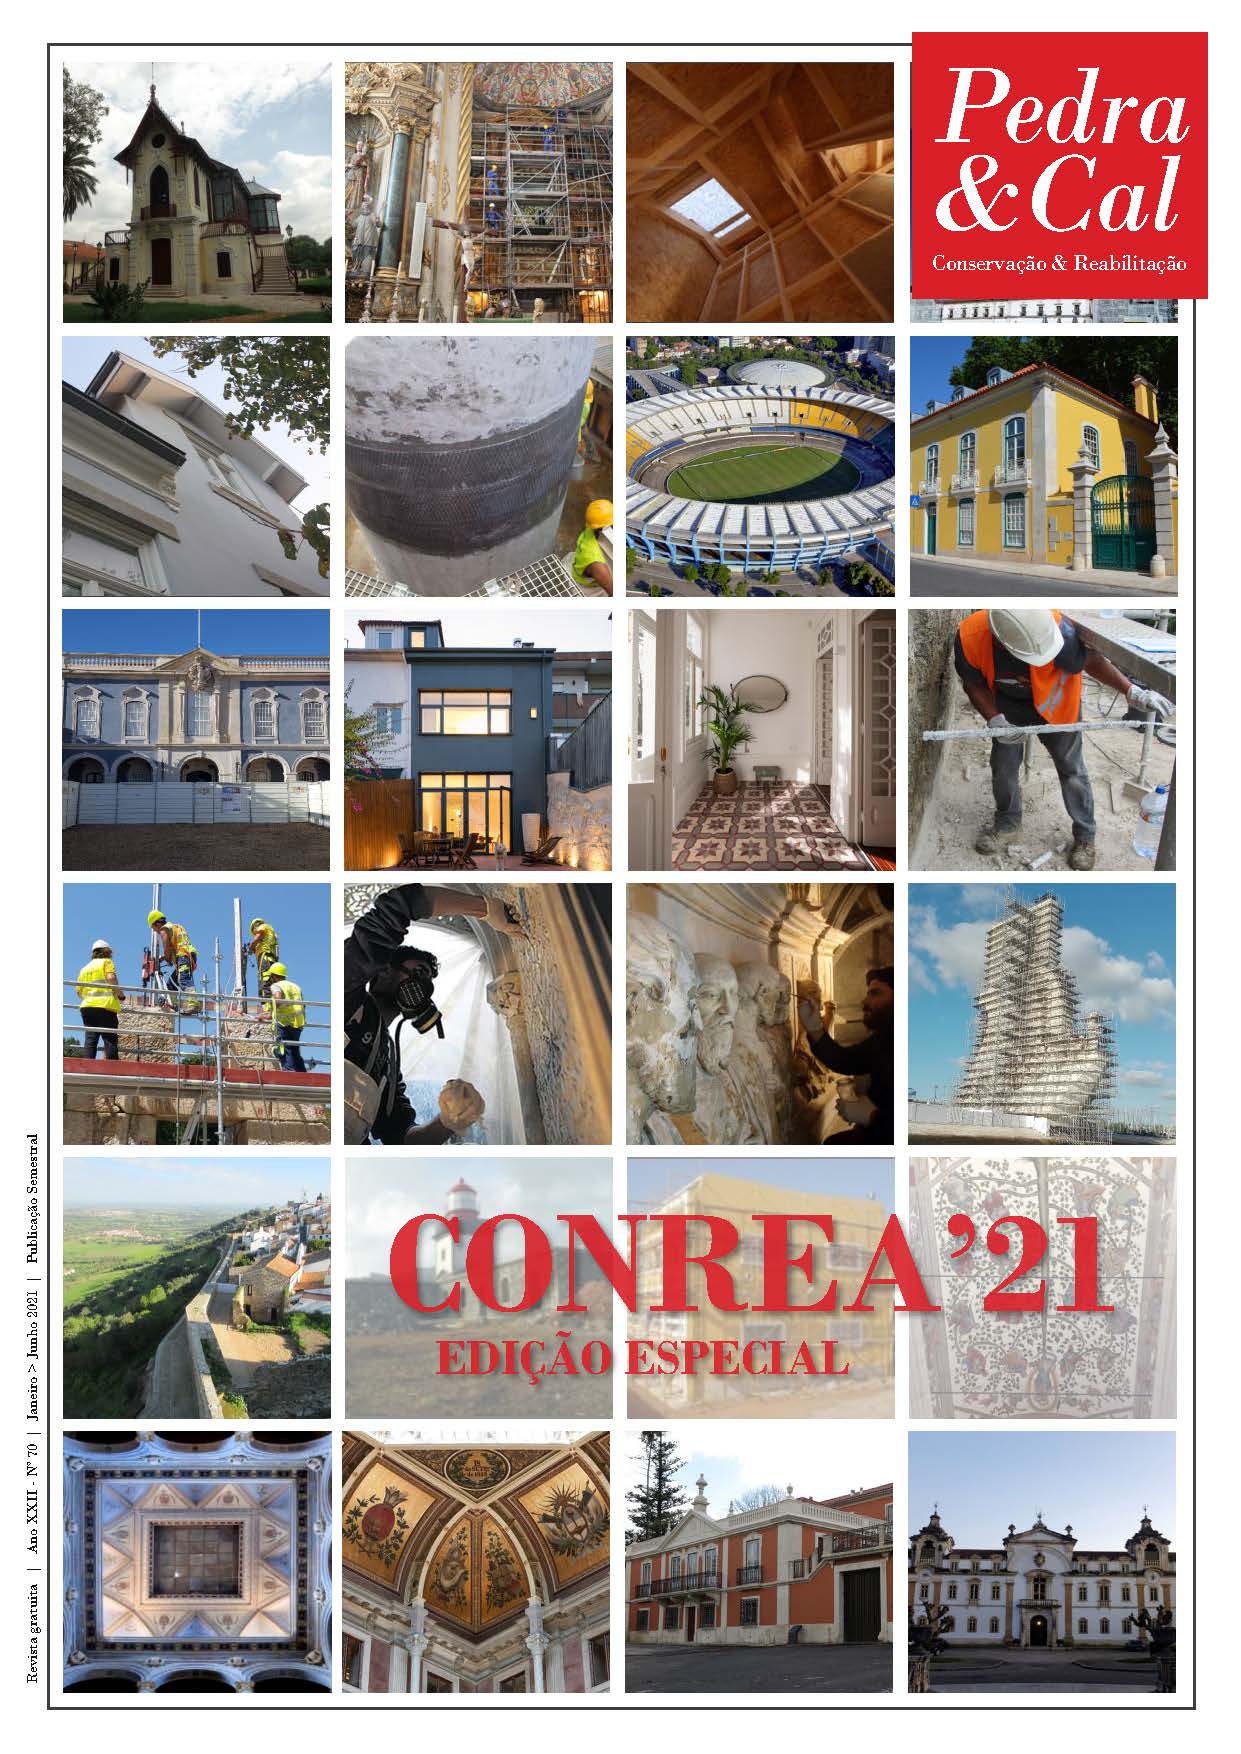 CONREA’21 - Edição Especial